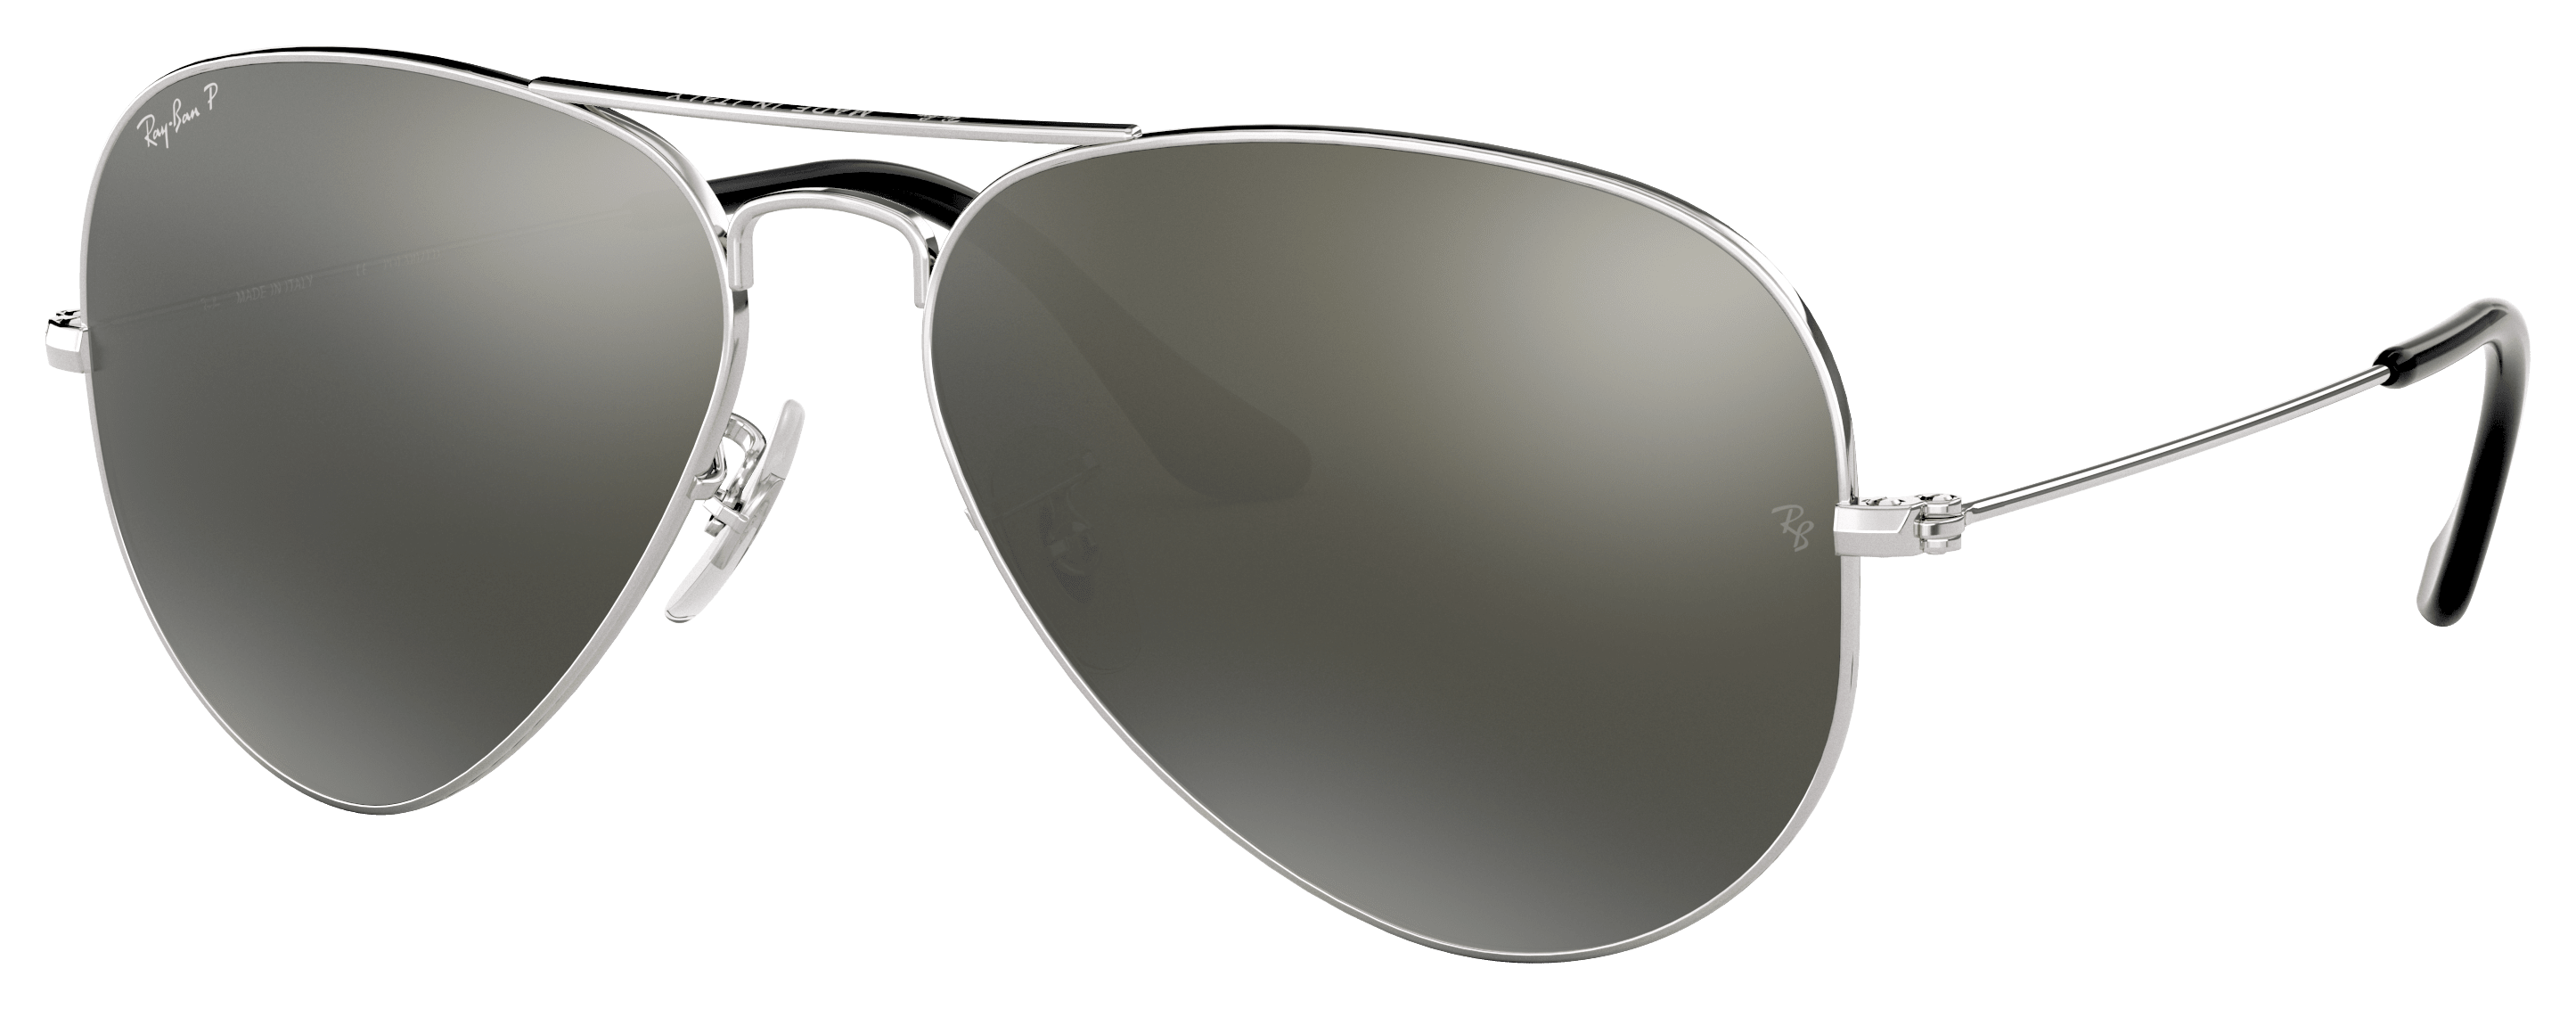 SPLIT Aviator Large Mirror Reflective Lenses Metal Frame Women Men  Sunglasses